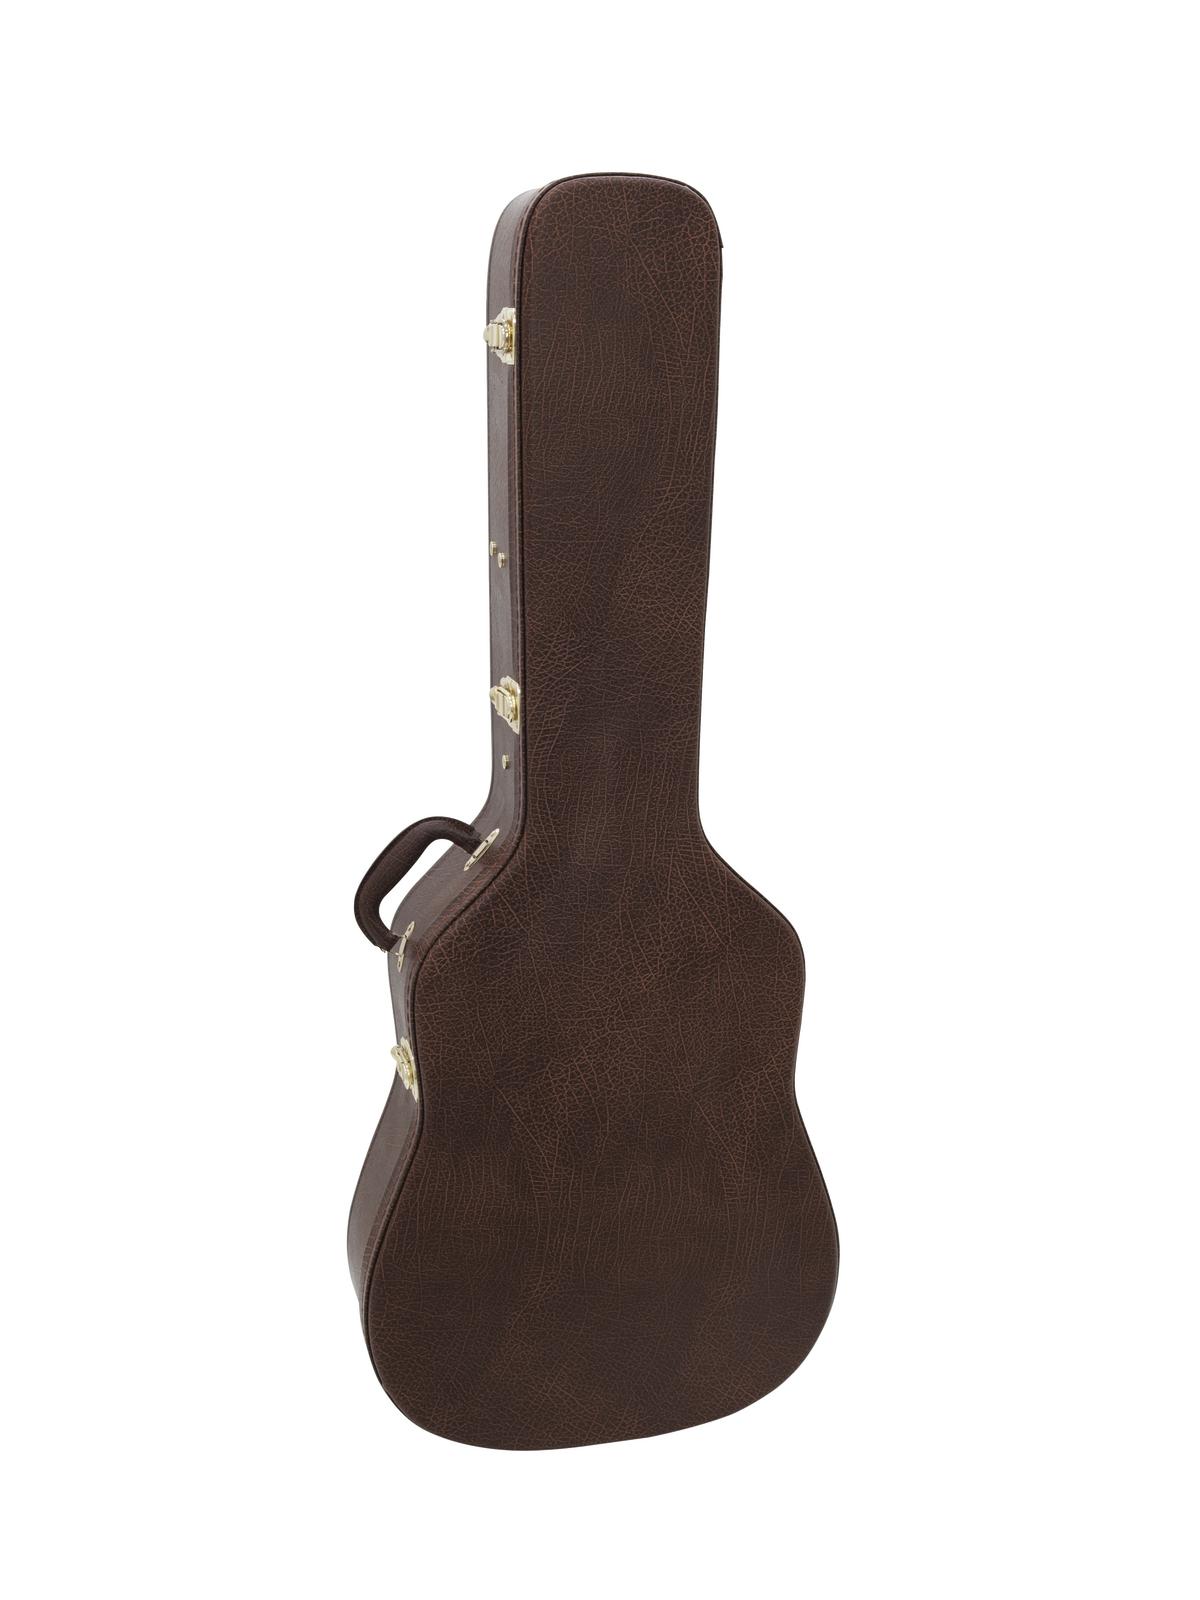 Dimavery tvarovaný kufr pro klasickou kytaru, hnědý